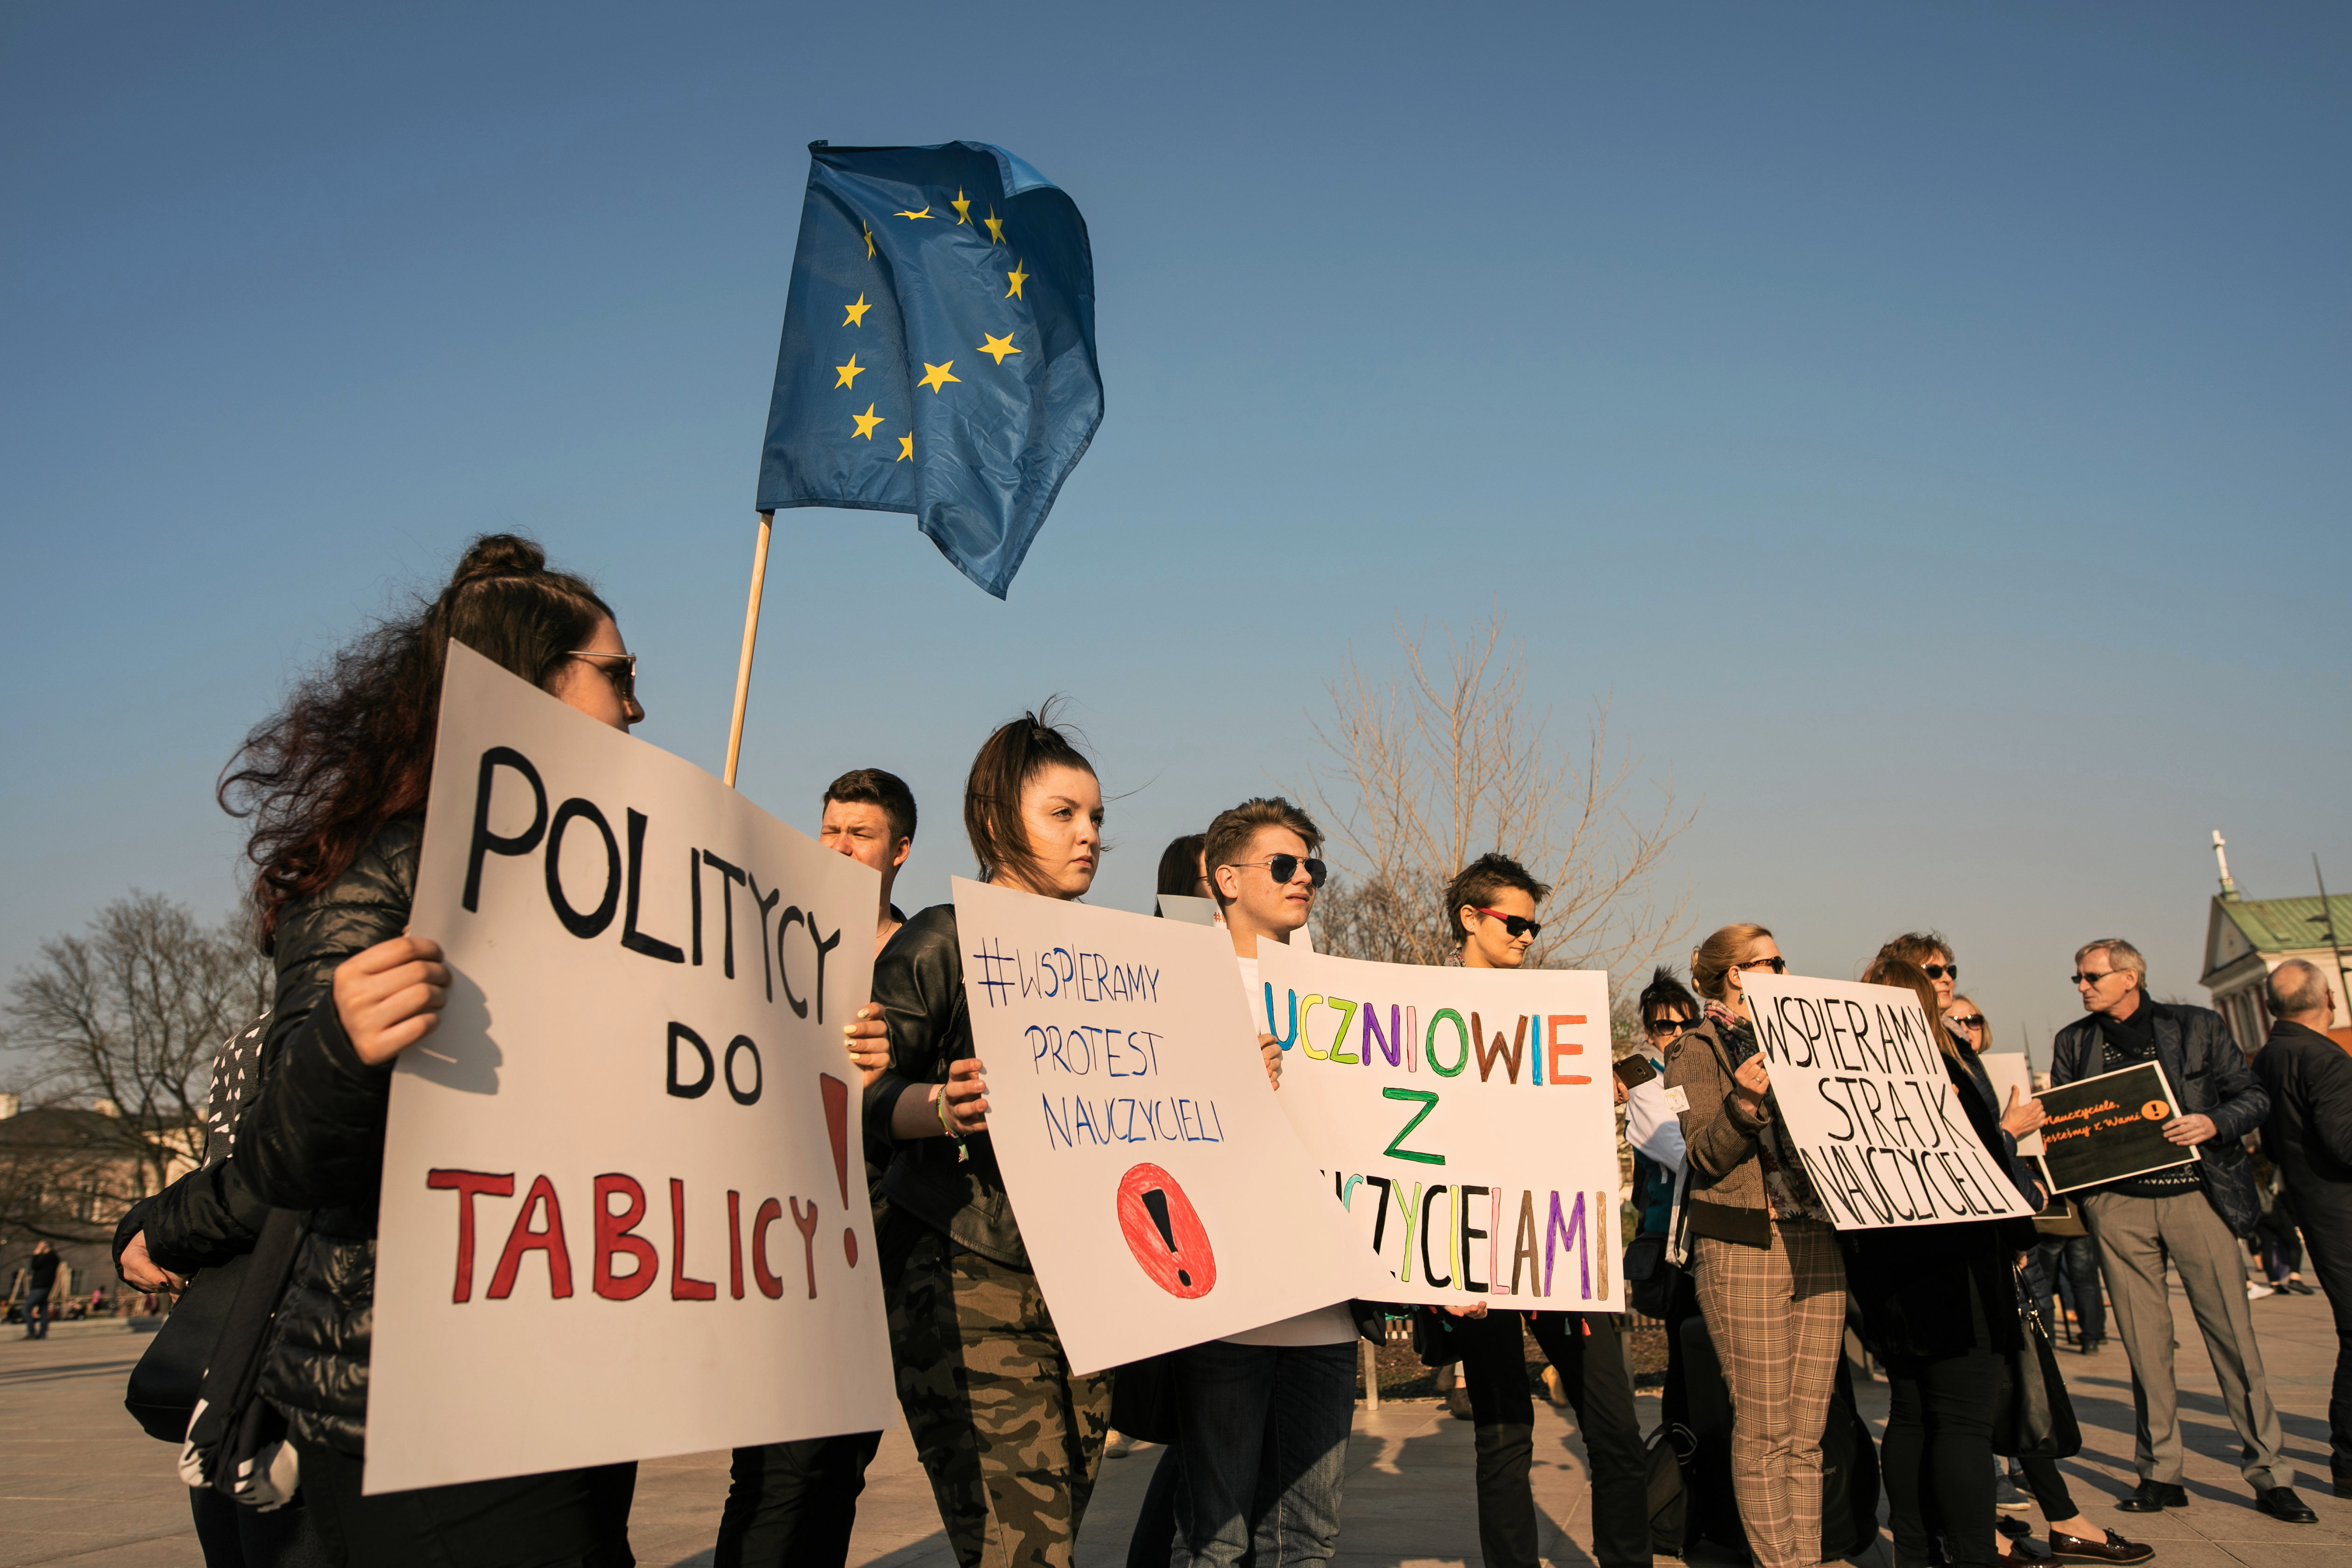 Co nauczyciele sądzą o zawieszeniu strajku? "To absolutna porażka" -  GazetaPrawna.pl